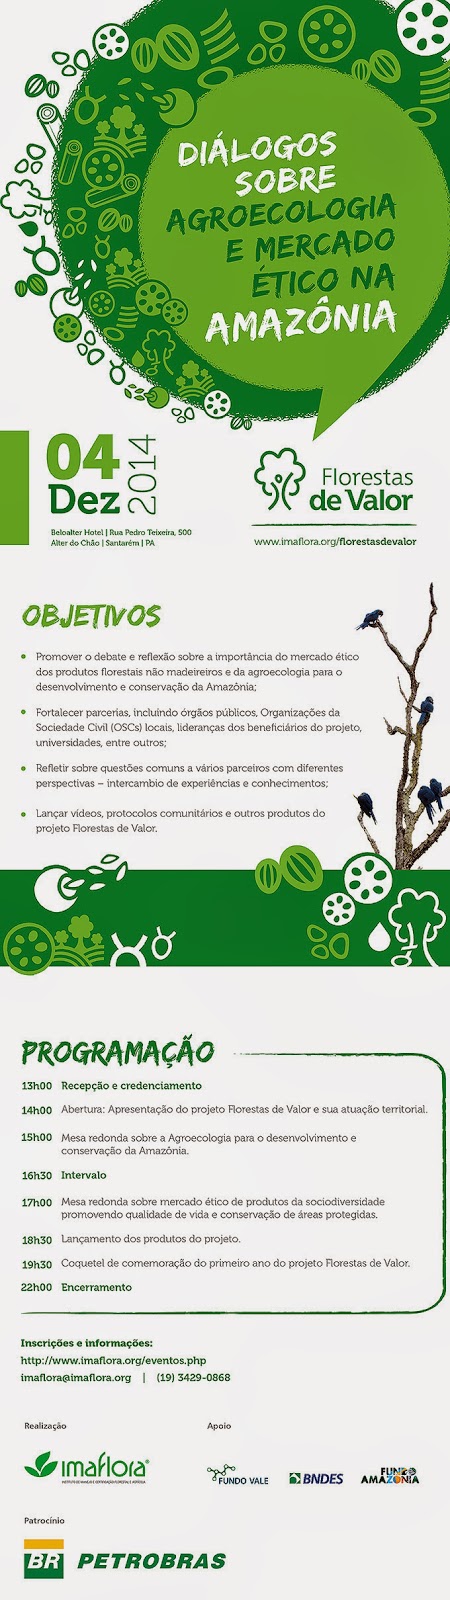 Convite - Diálogos sobre Agroecologia e Mercado Ético na Amazônia